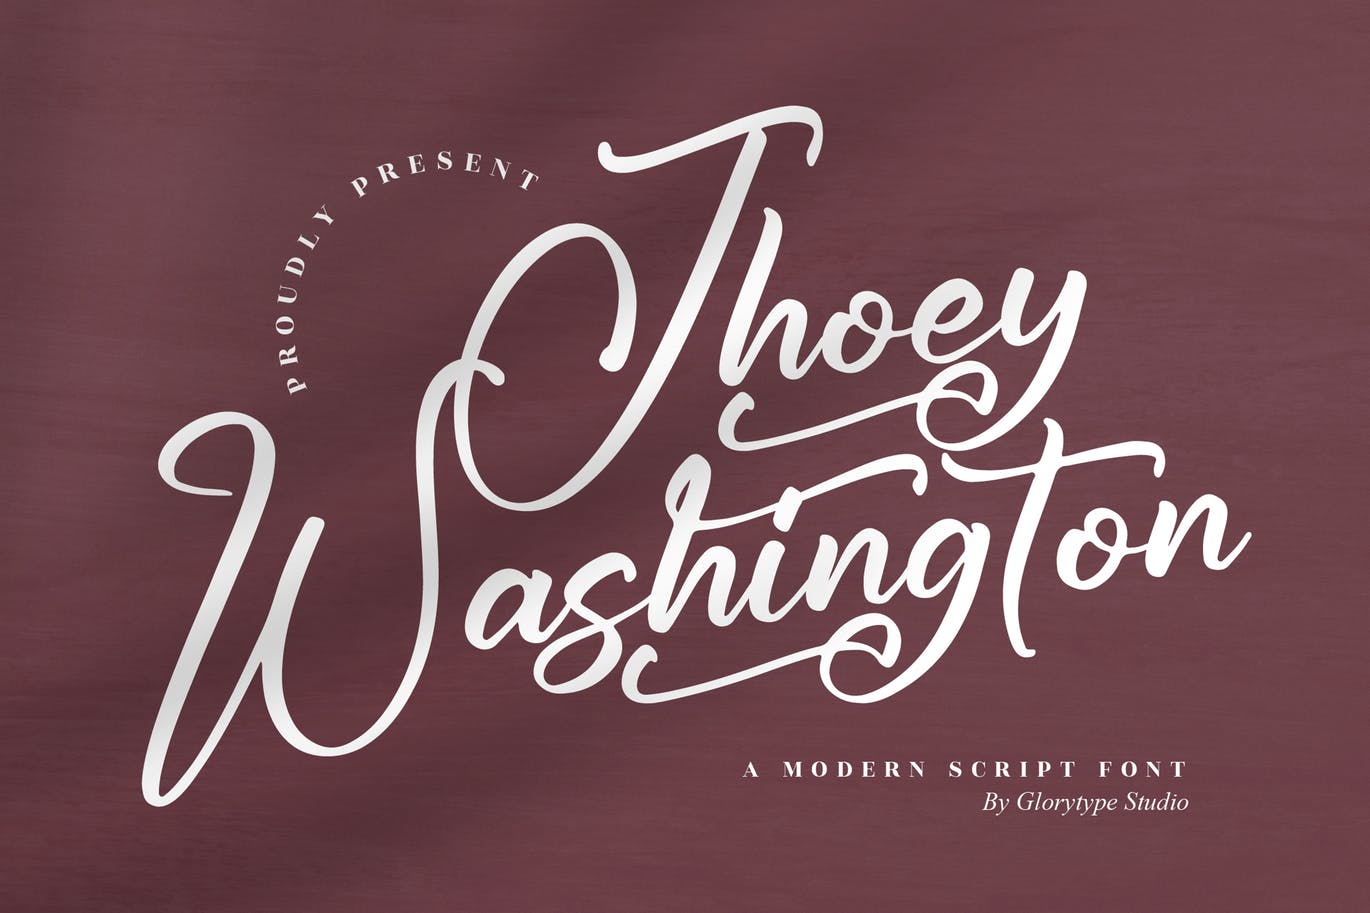 品牌推广手写脚本字体 Jhoey Washington Script Font 设计素材 第1张